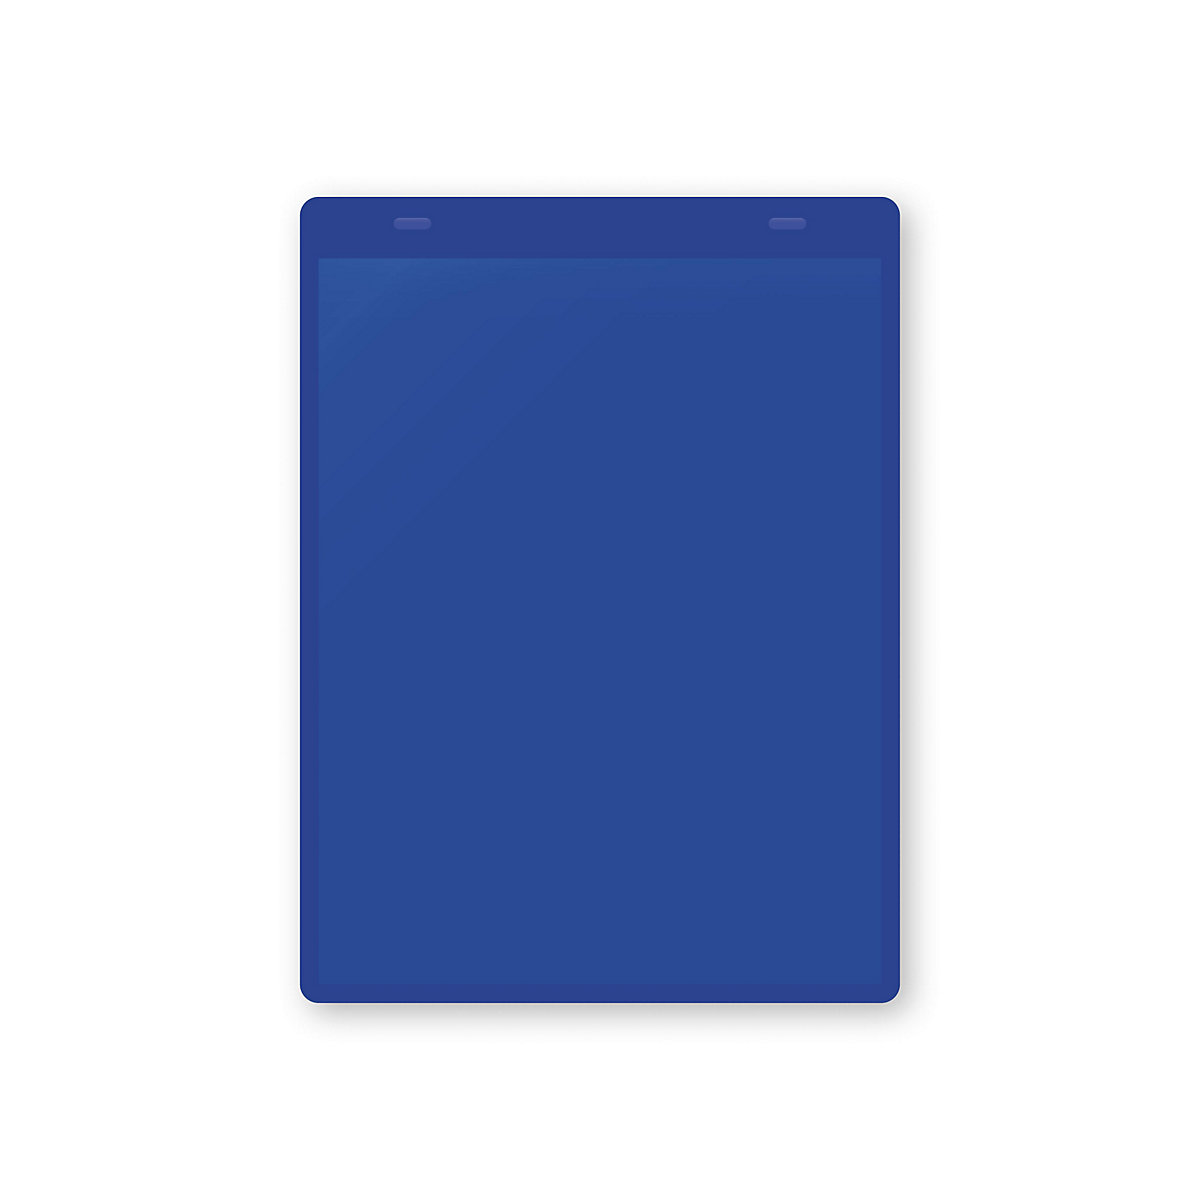 Öntapadó dokumentumtartó tasakok, DIN A5, álló, cs. e. 50 db, kék